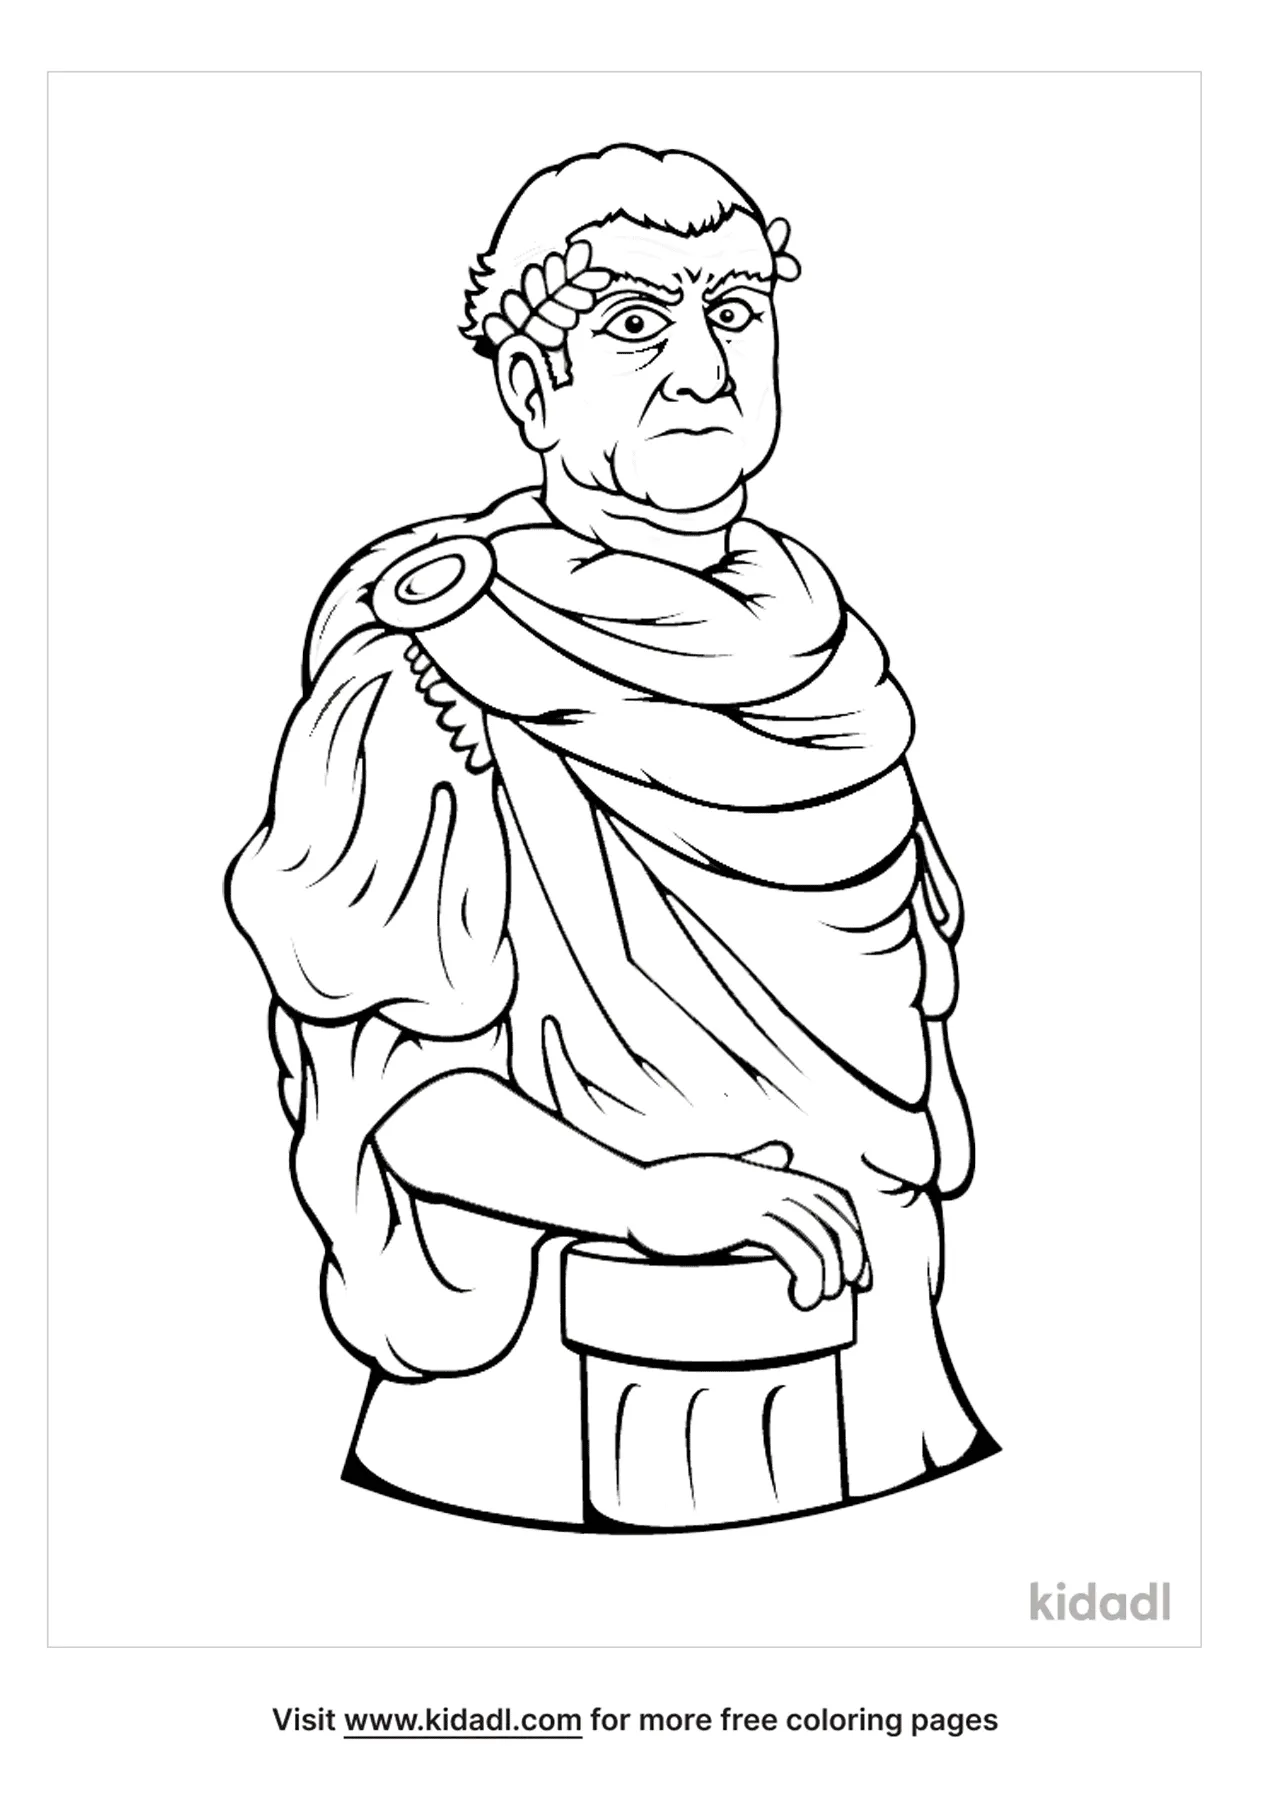 Free Roman Emperor Cartoon Coloring Page | Coloring Page Printables | Kidadl